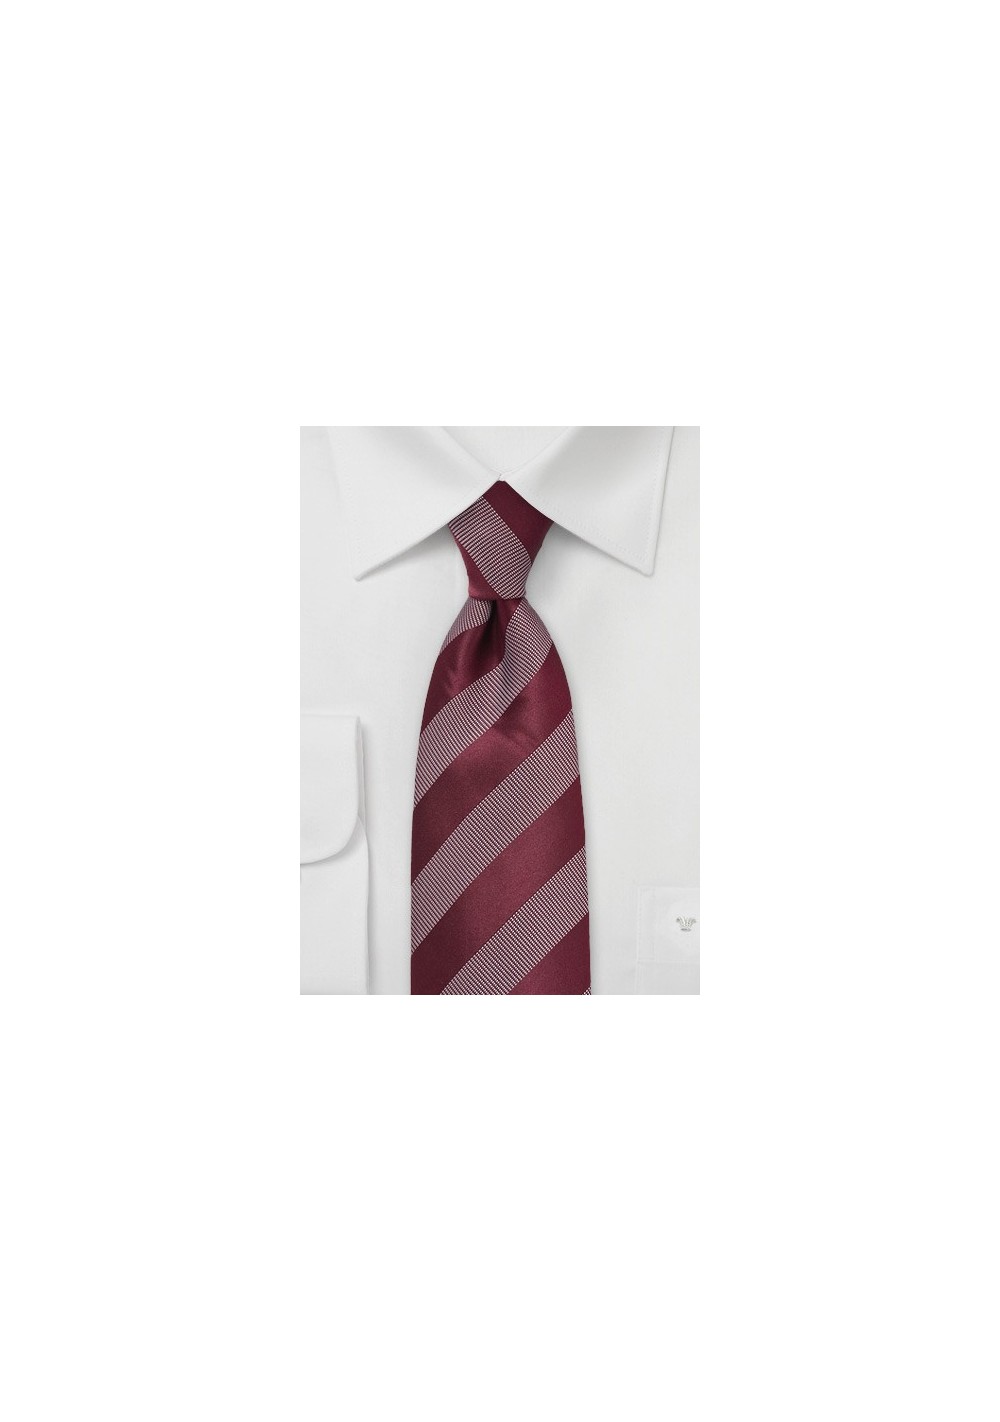 Striped Tie in Modern Merlot